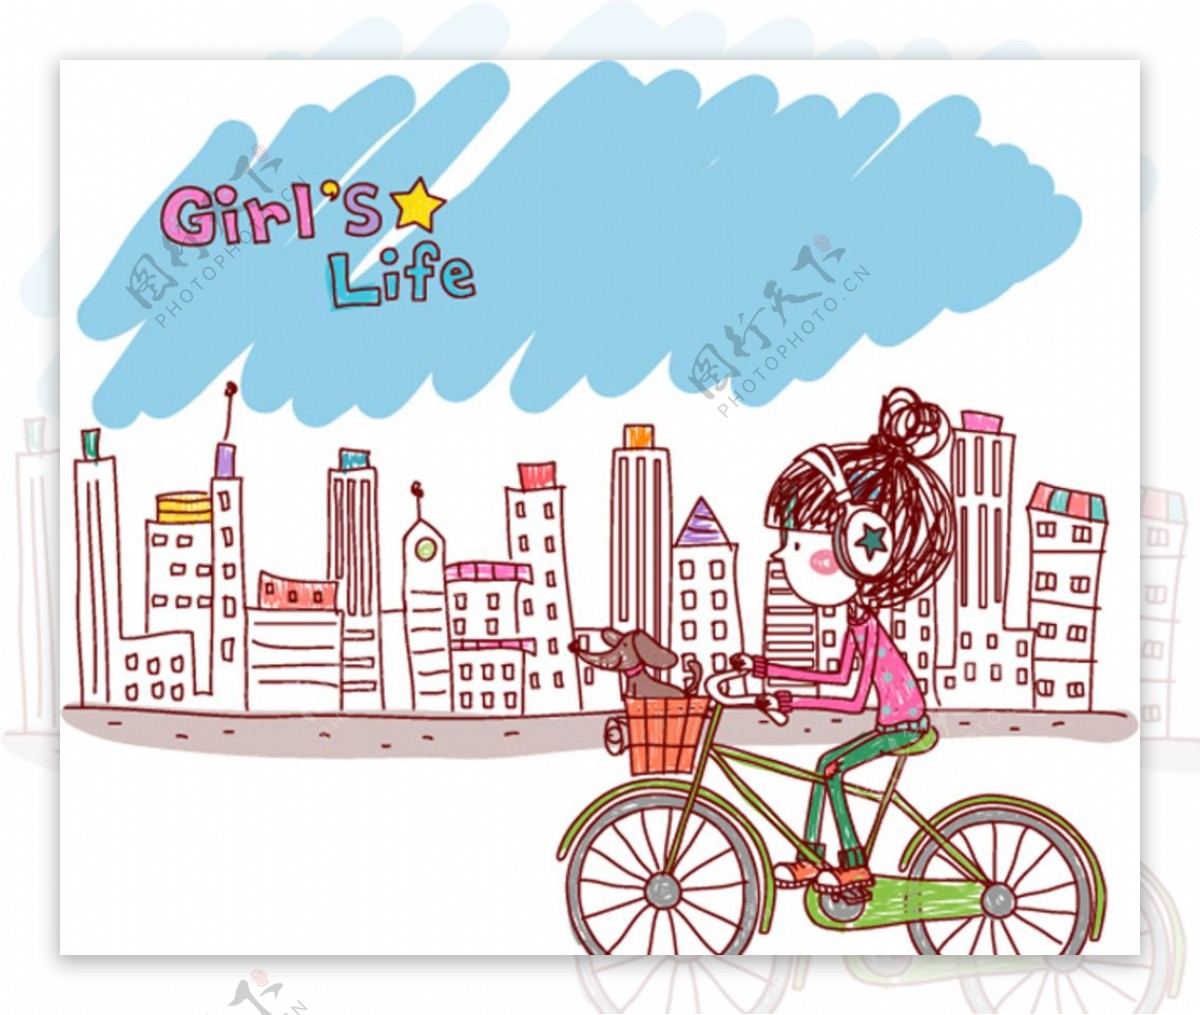 自行车女孩 库存照片. 图片 包括有 女演员, 休闲, 骑自行车者, 骑自行车的人, 愉快, 生活方式, 室外 - 23795130